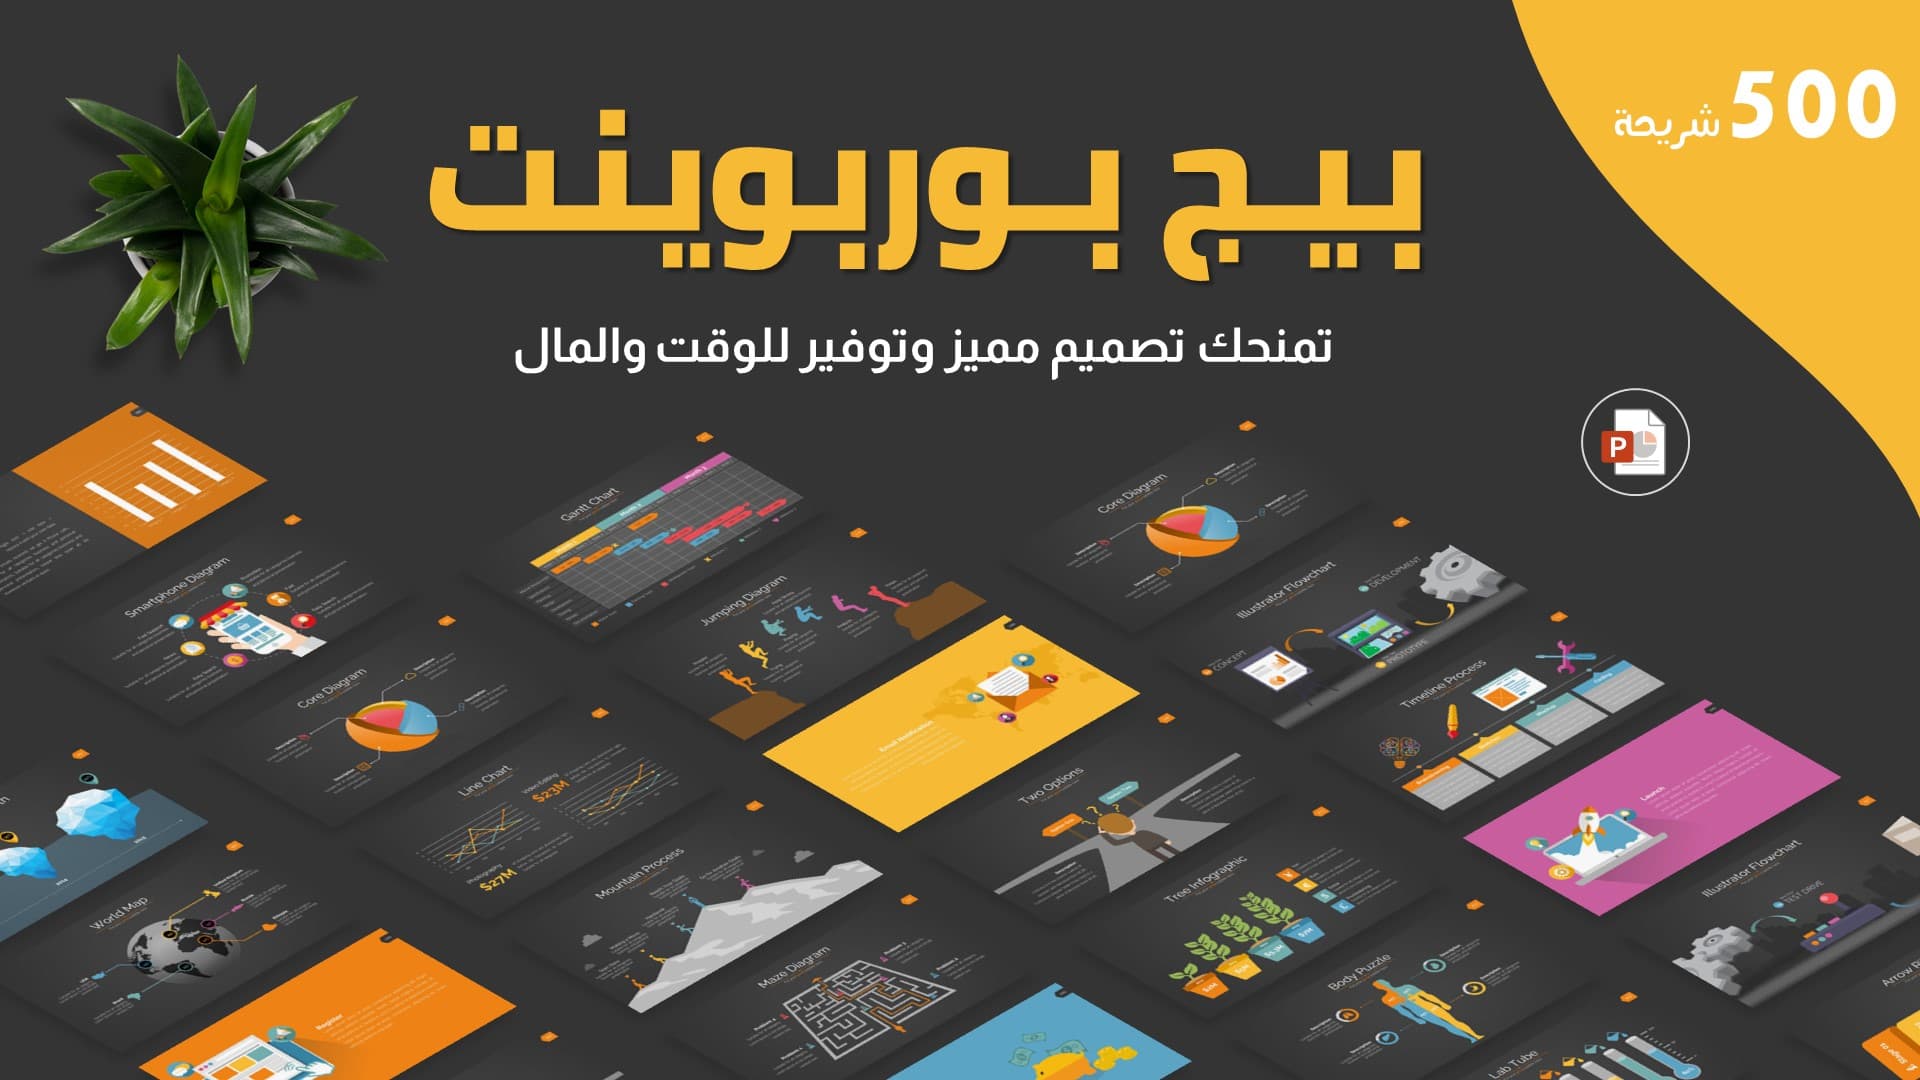 بيج بوربوينت - 500 شريحة متحركة باللغتين العربية والإنجليزية